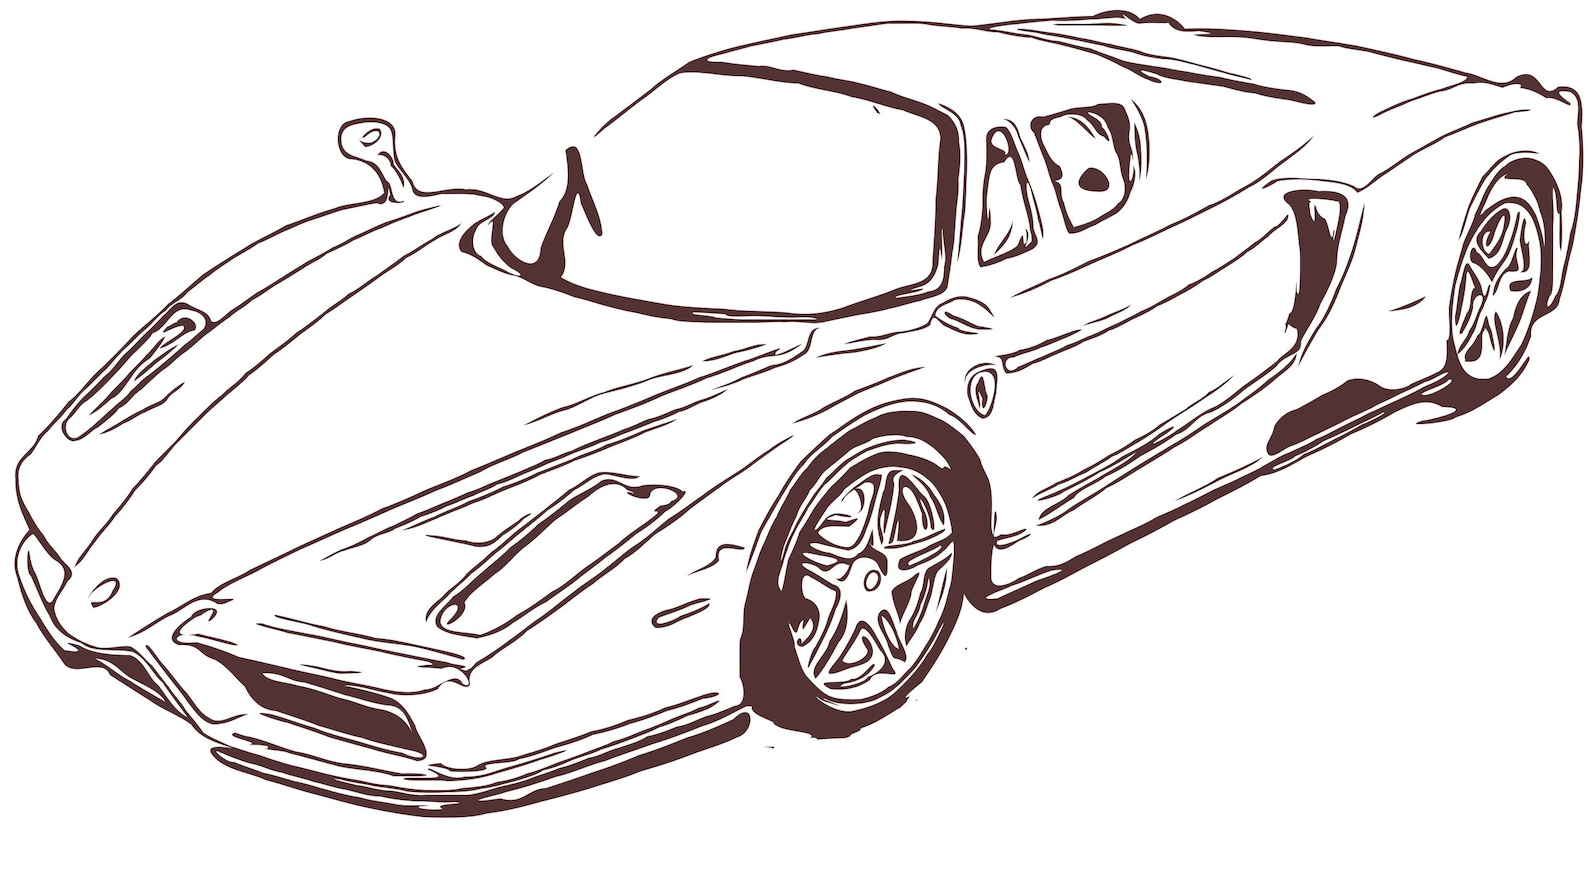 Ferrari Svg Dxf Eps Vector Files for Engraving Silhouette | Etsy